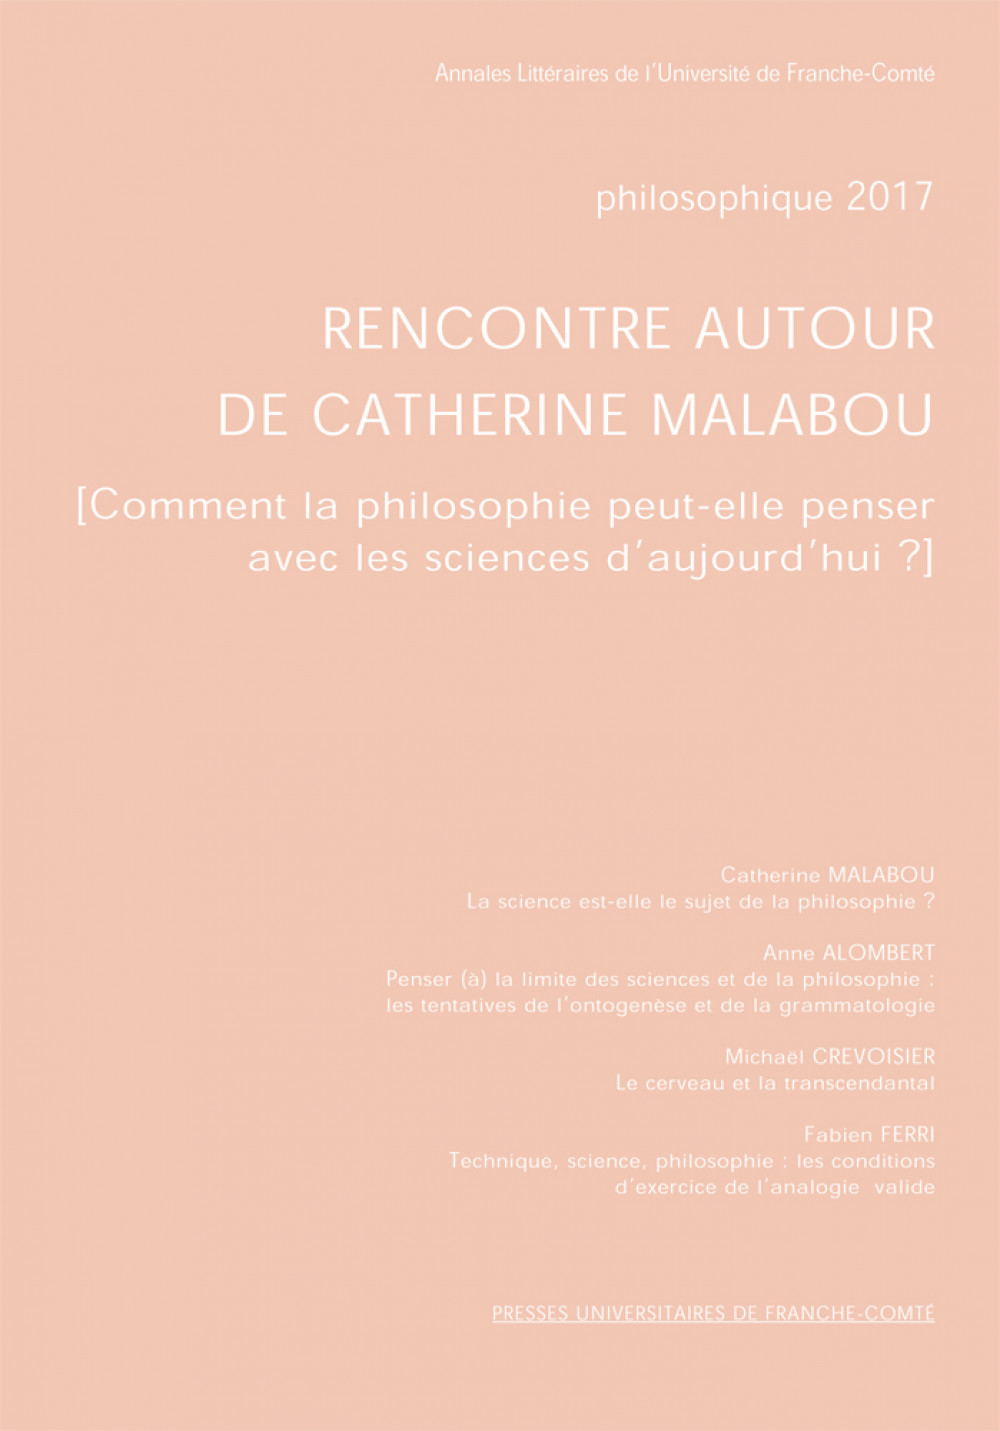 Rencontre autour de Catherine Malabou